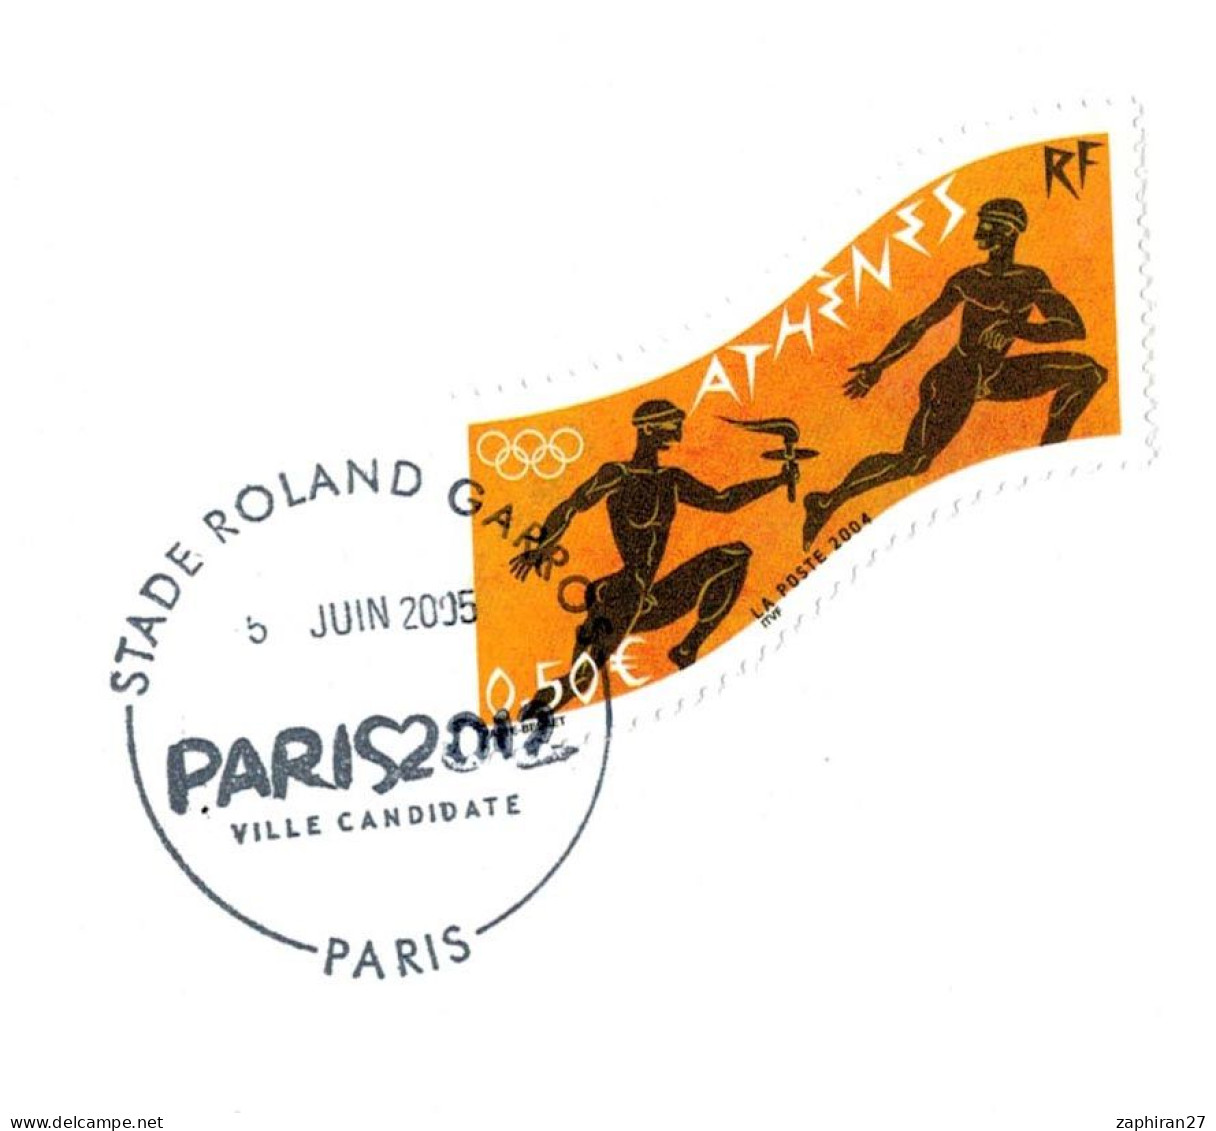 JEUX OLYMPIQUES PARIS 2012 STADE ROLAND GARROS VILLE CANDIDATE (5-6-2005) #462# - Verano 2012: Londres